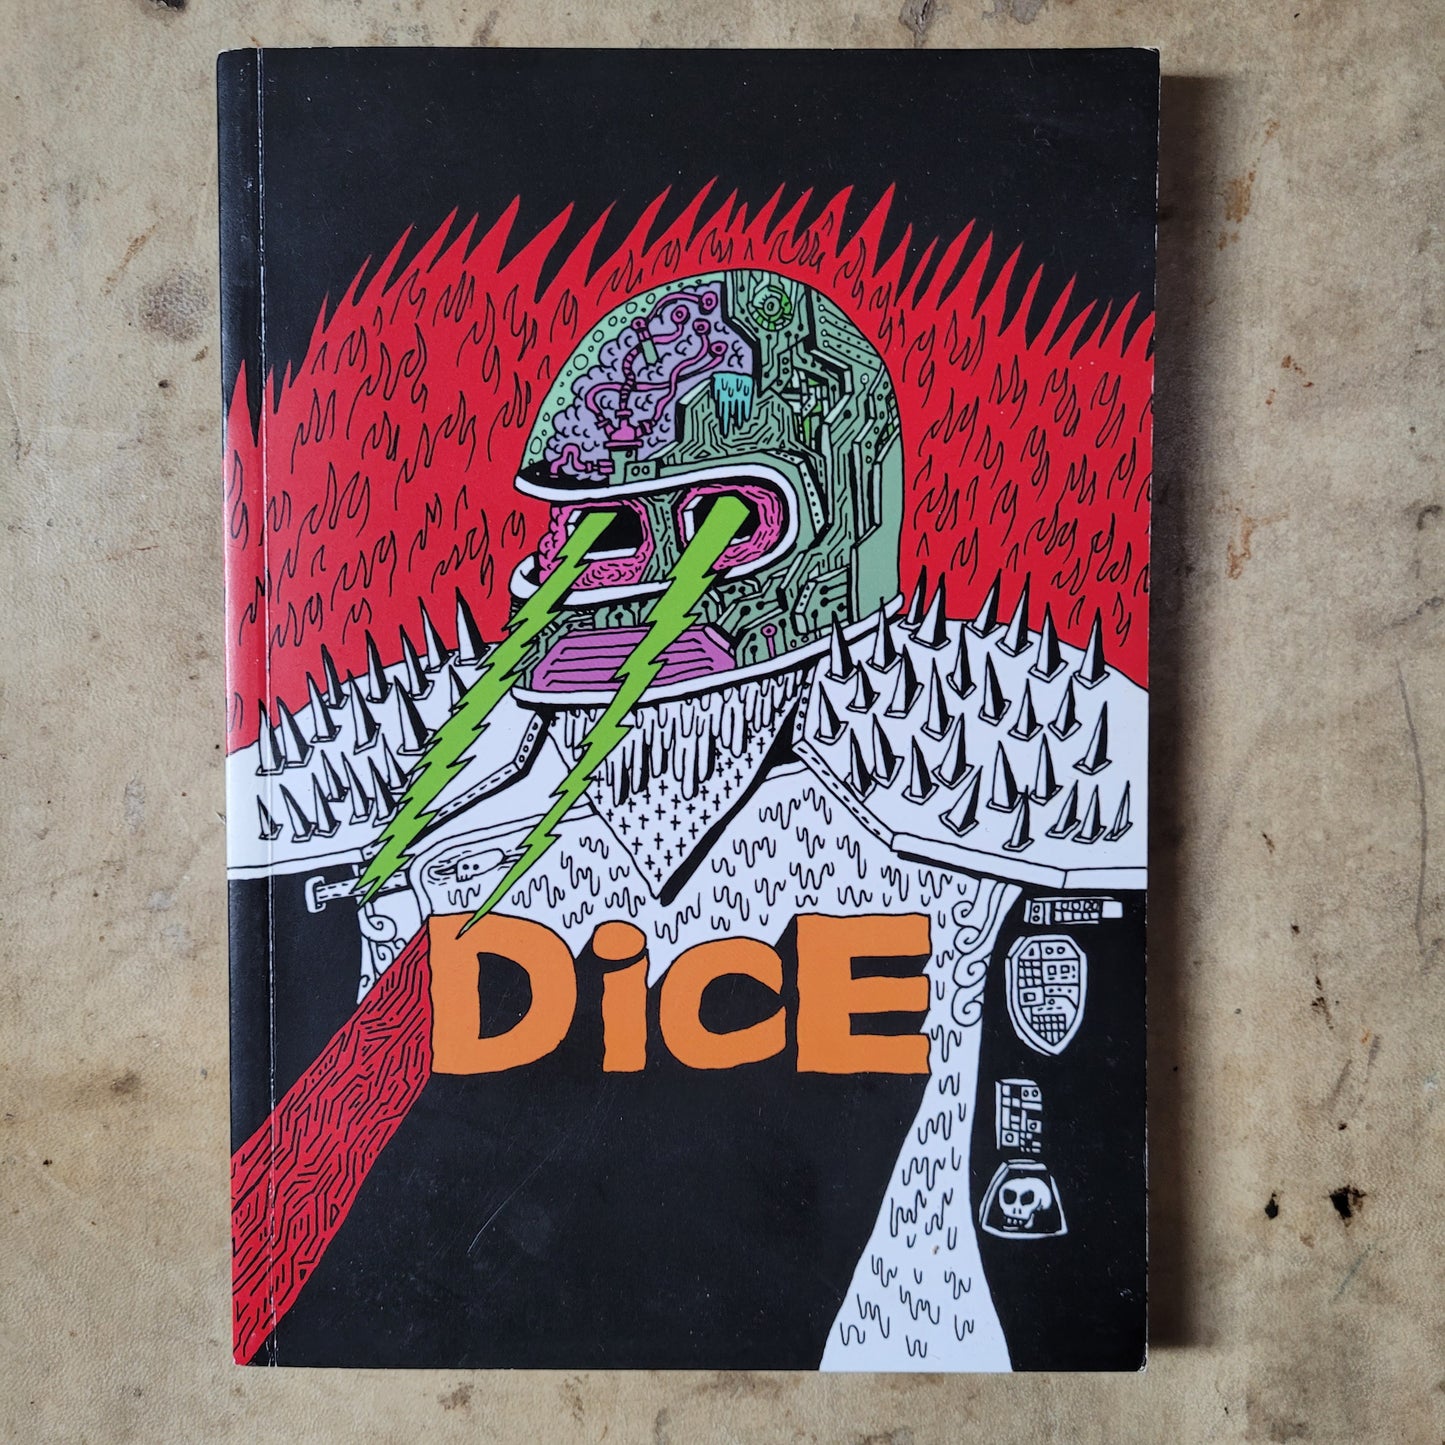 Dice magazine issue 46